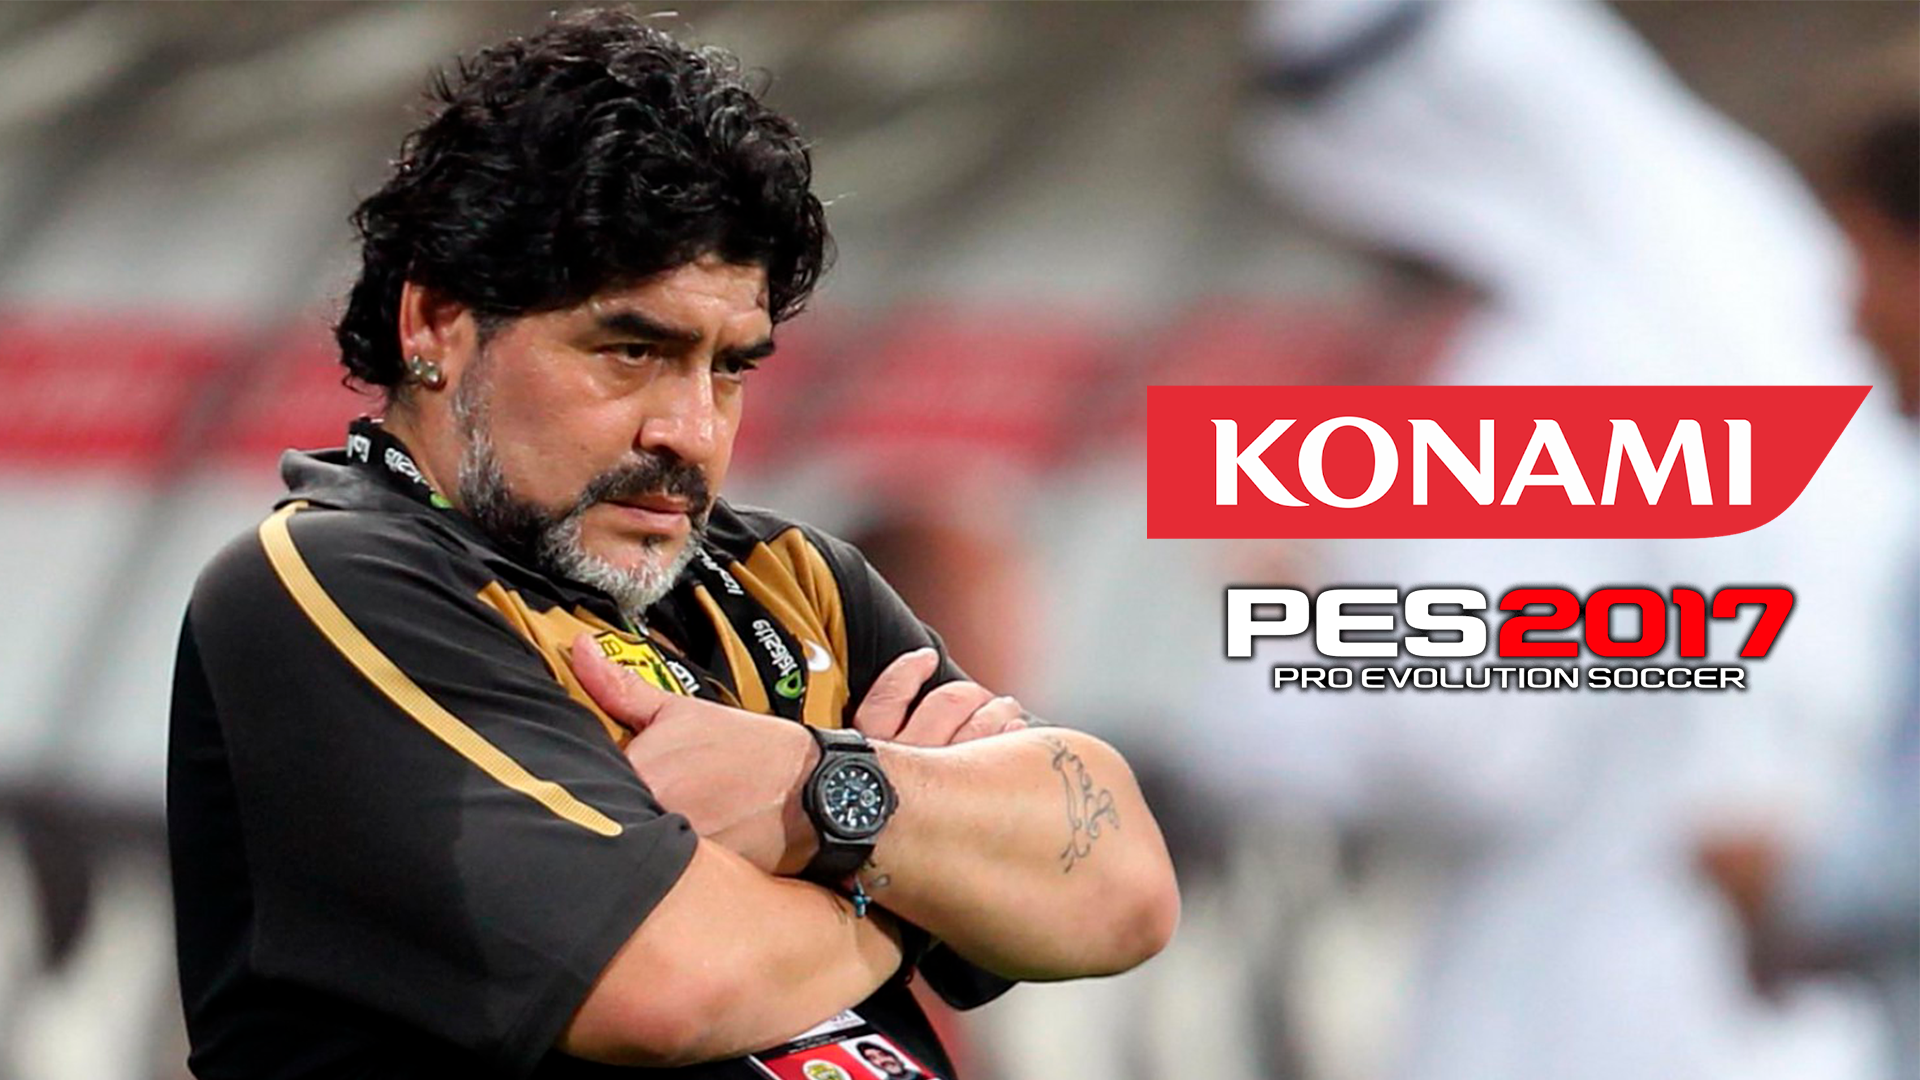 Round 3: Maradona y un nuevo mensaje para Konami